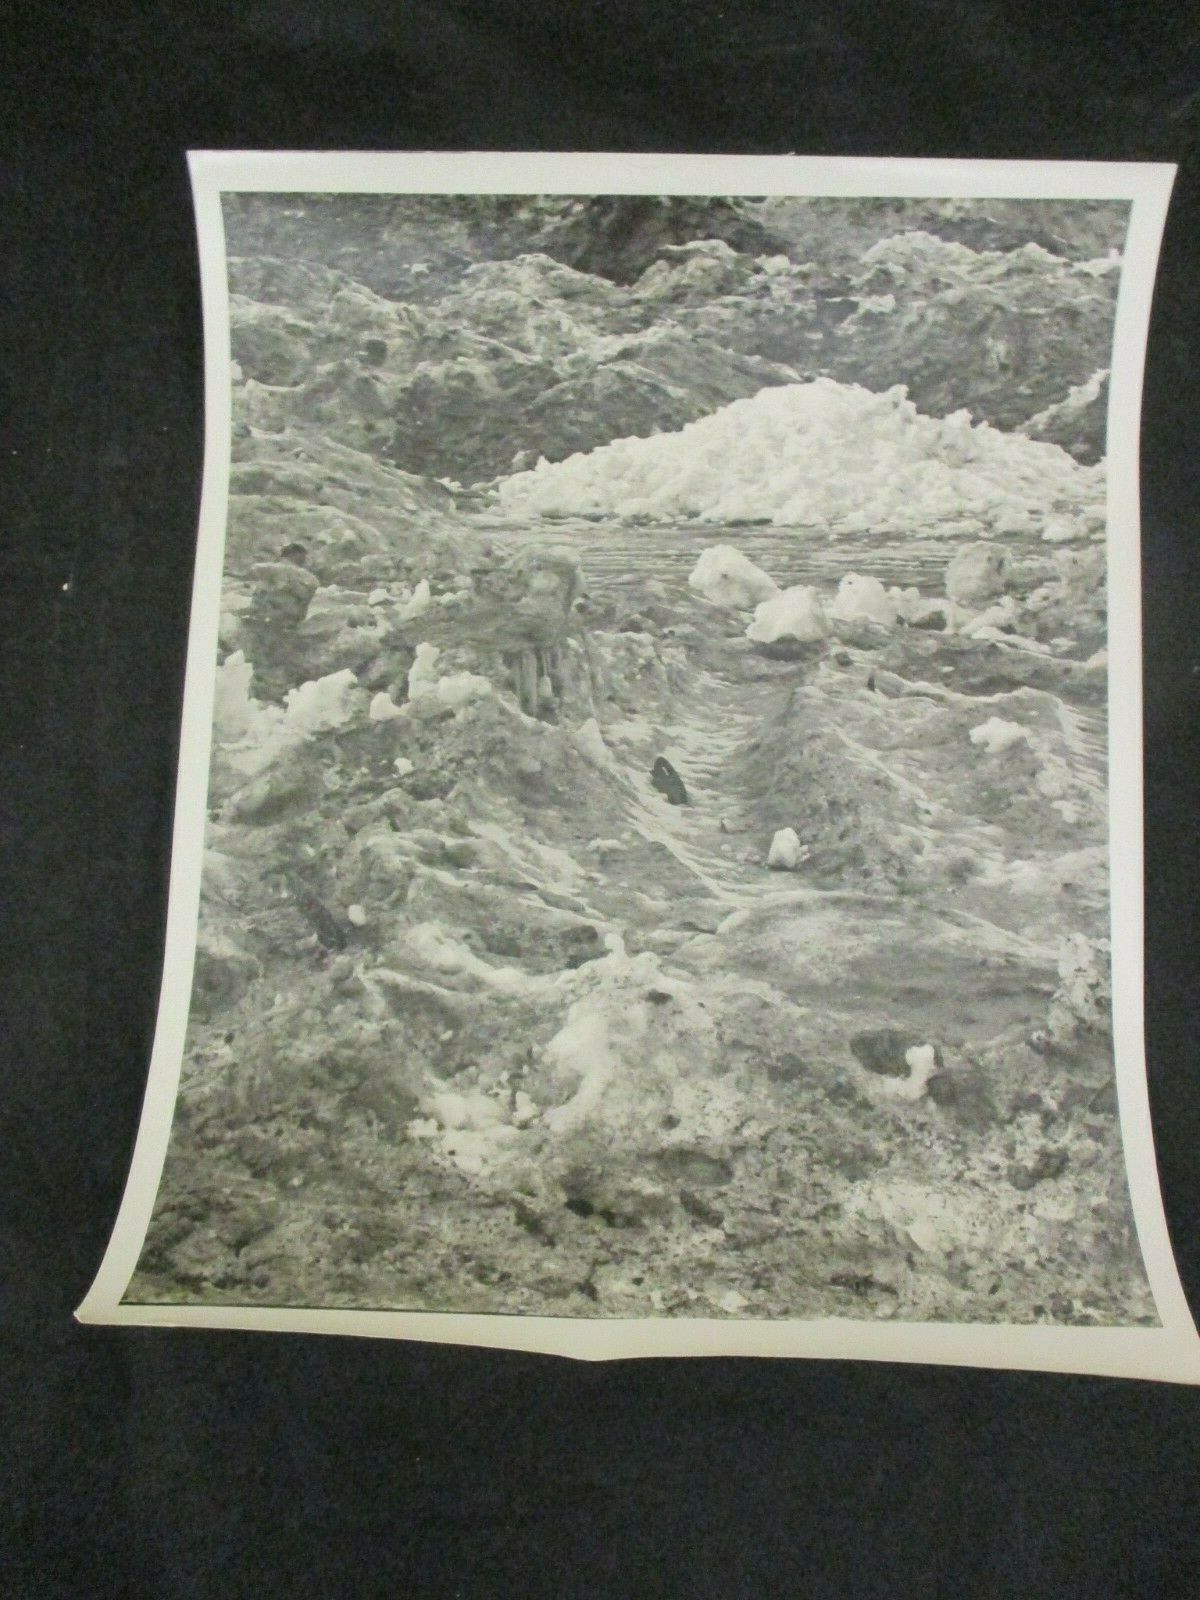 1980s Vintage E.D. Barnes Lehigh Valley Pro Photo #493 Dirty Snow Piles Debris